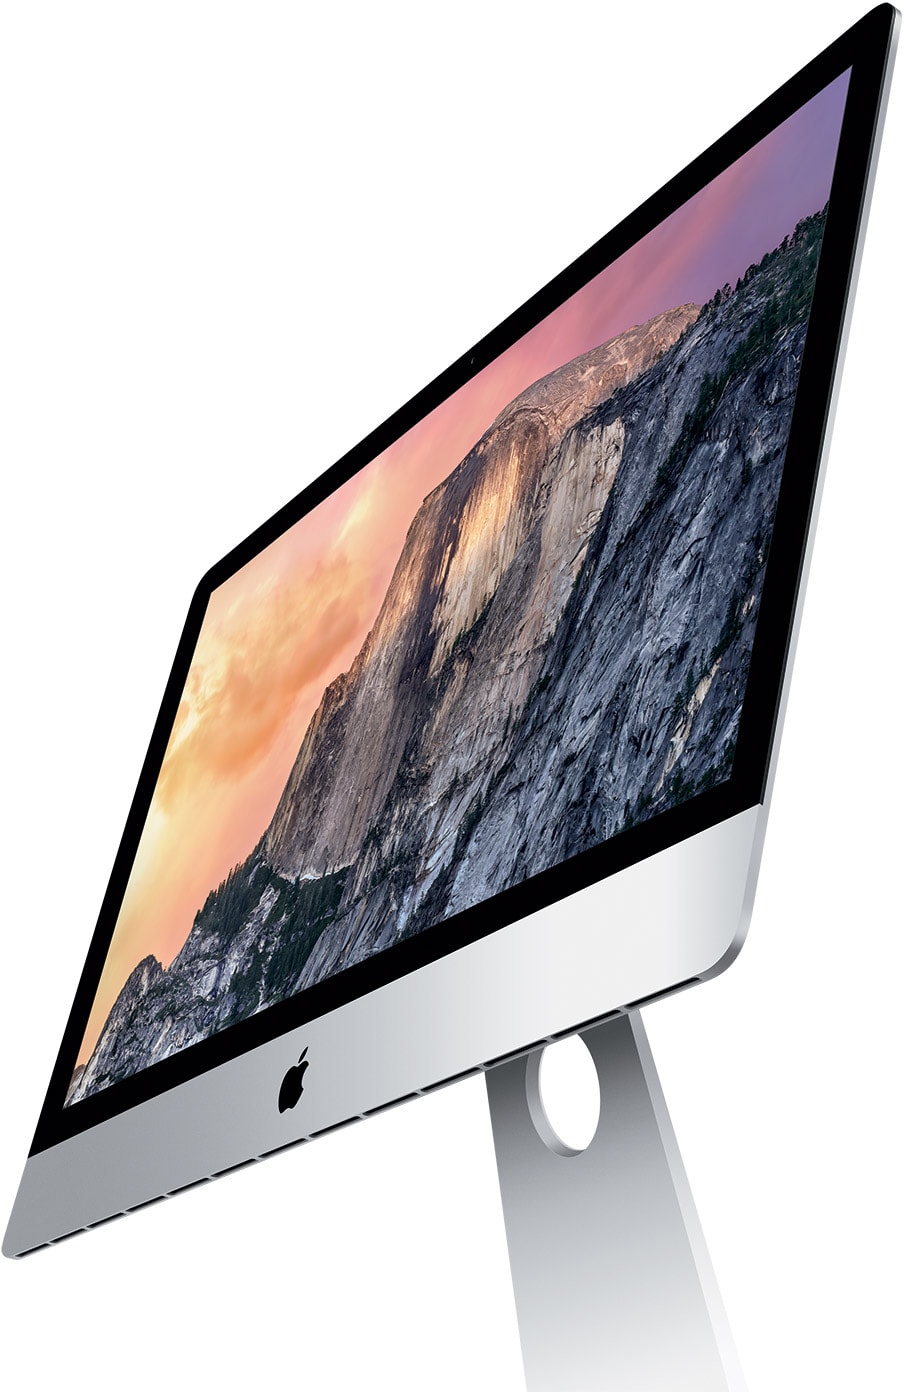 iMac 27 pouces 2012 : le vrai nouvel iMac ?